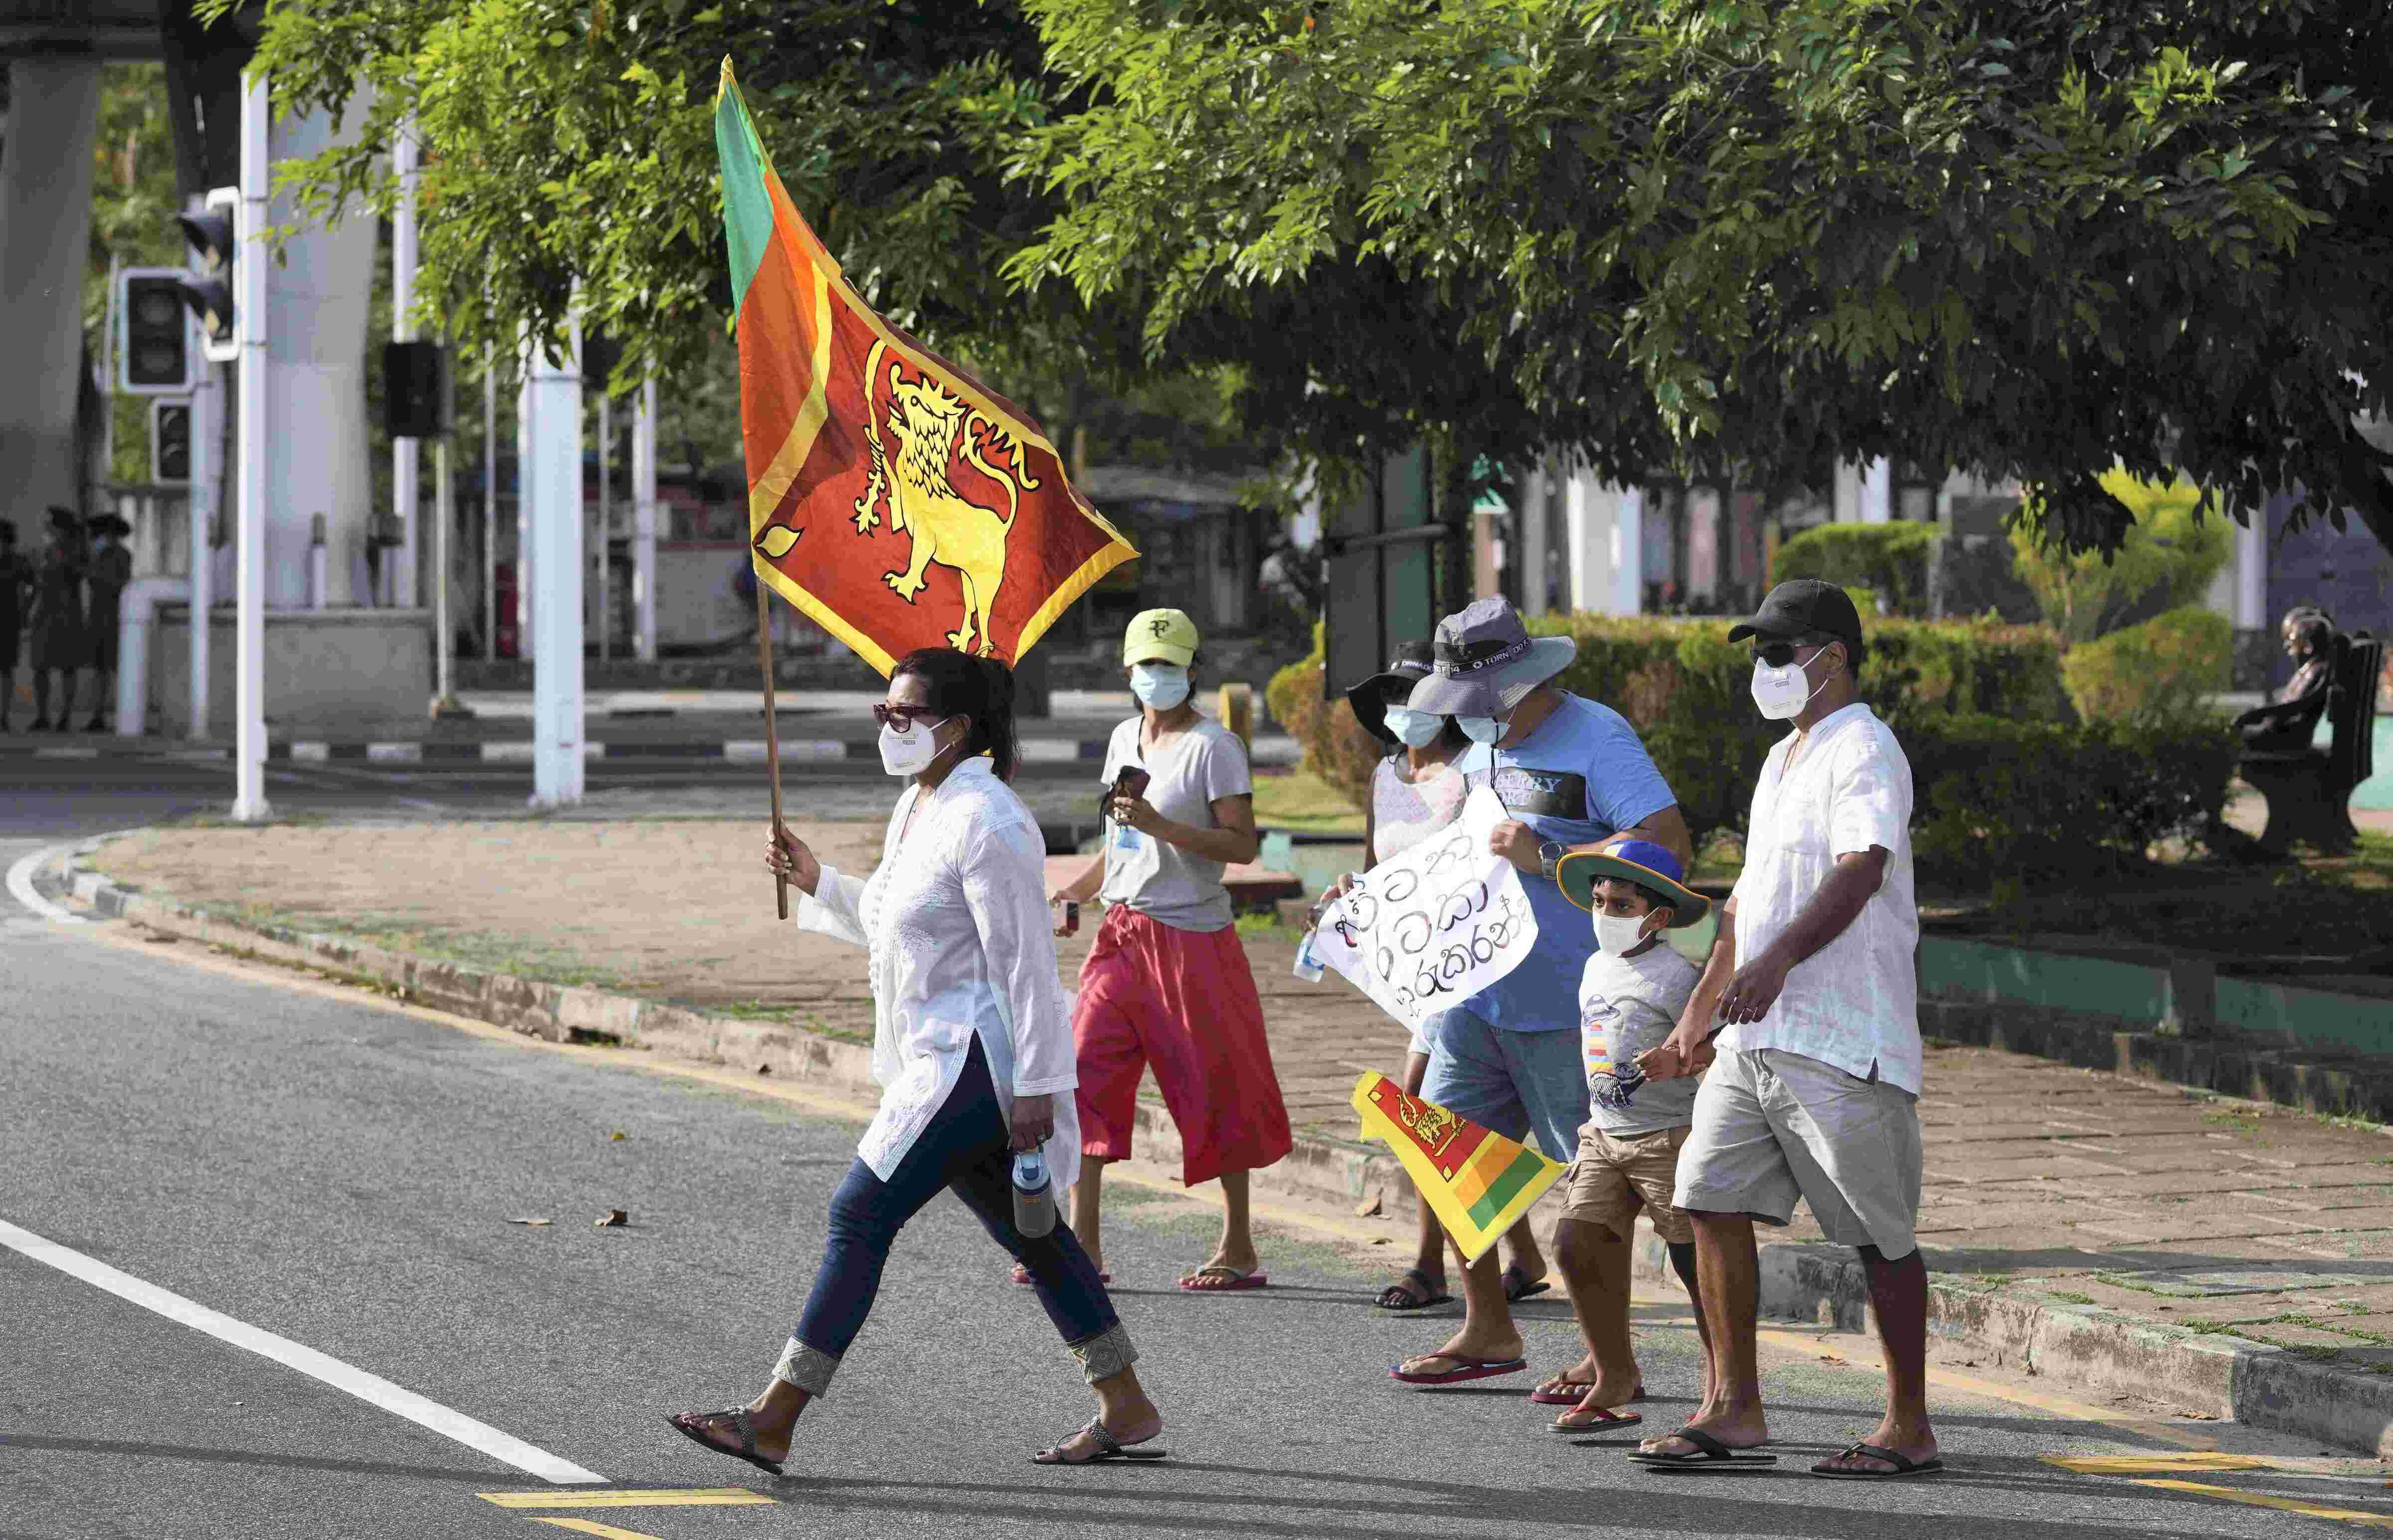 Sri Lankan President Rajapaksa invites Opposition to join unity govt